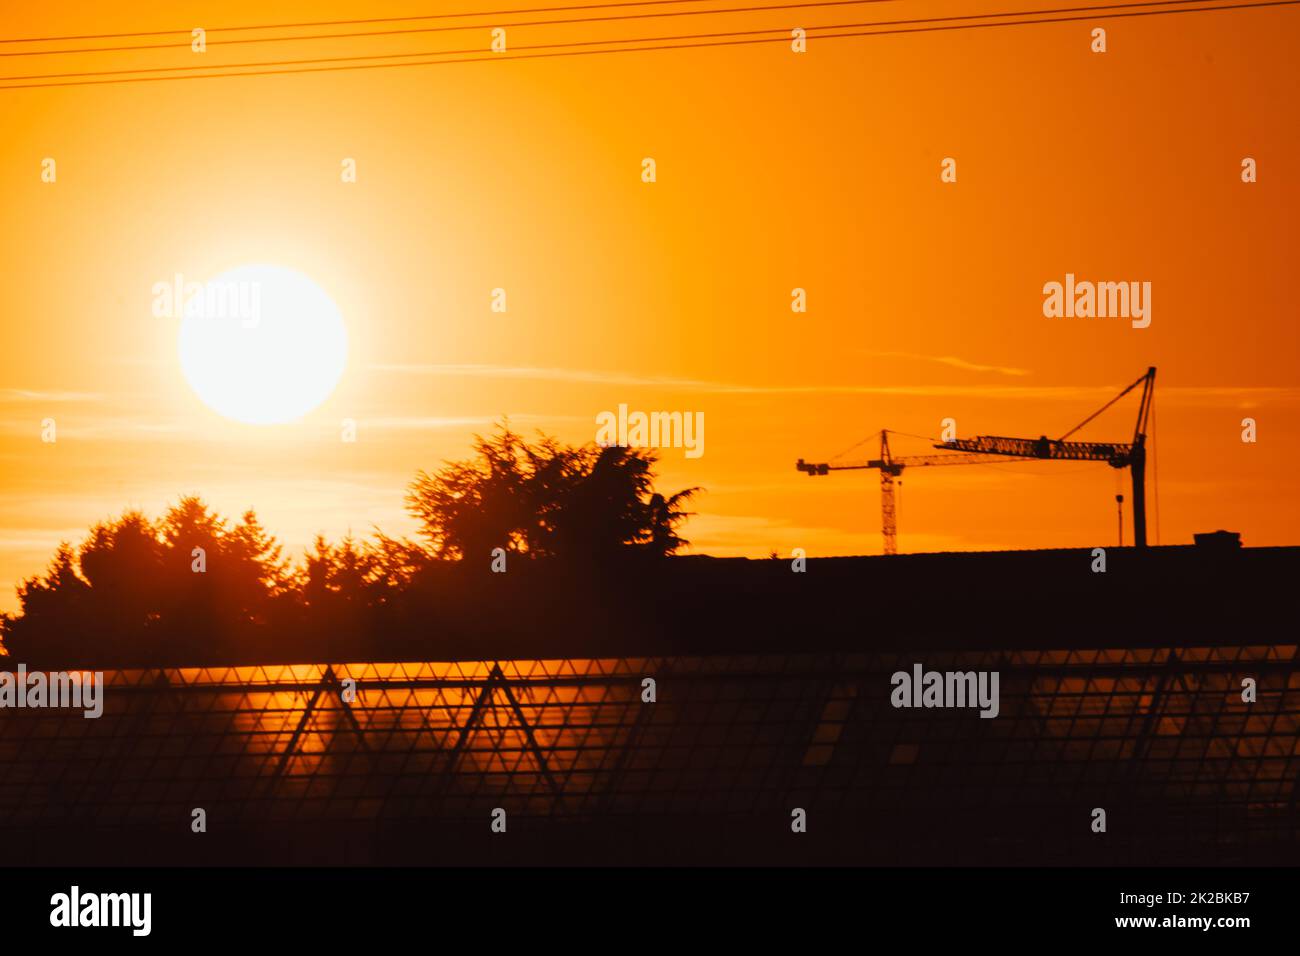 La silhouette di gru da costruzione alta in cielo arancione tramonto mostra il sito di costruzione con l'ingegneria per gli edifici moderni e lo sviluppo della città come lavoro di squadra architettonico per le linee ad alta tensione grattacieli Foto Stock